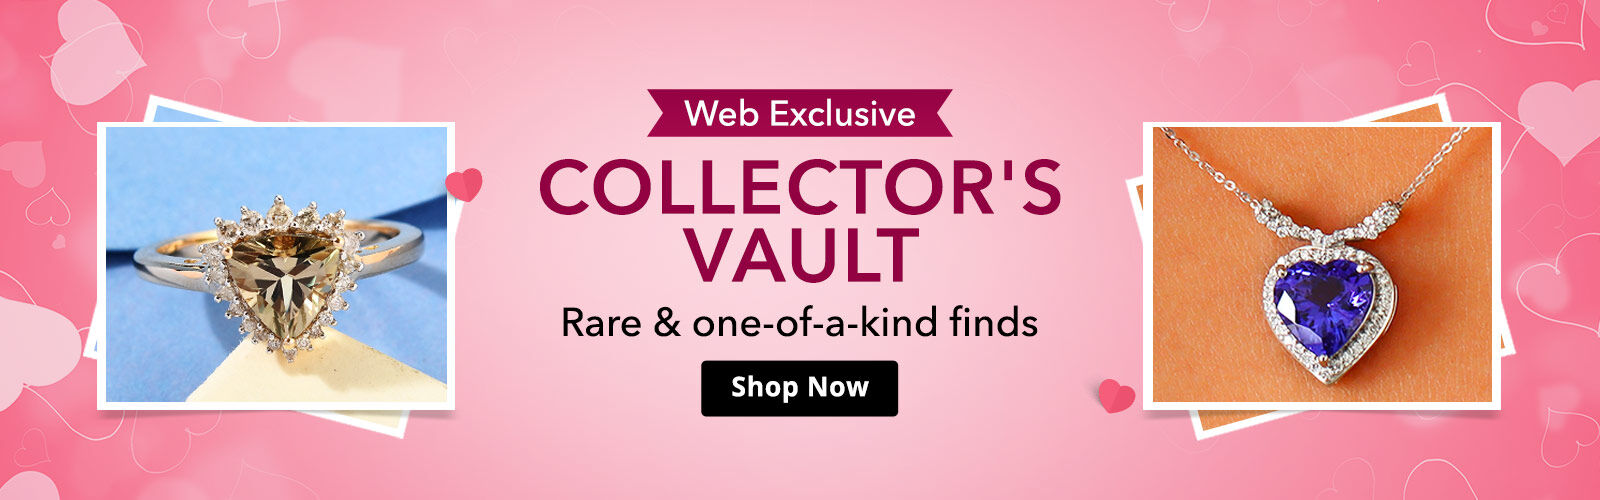 Web Exclusive Collector's Vault